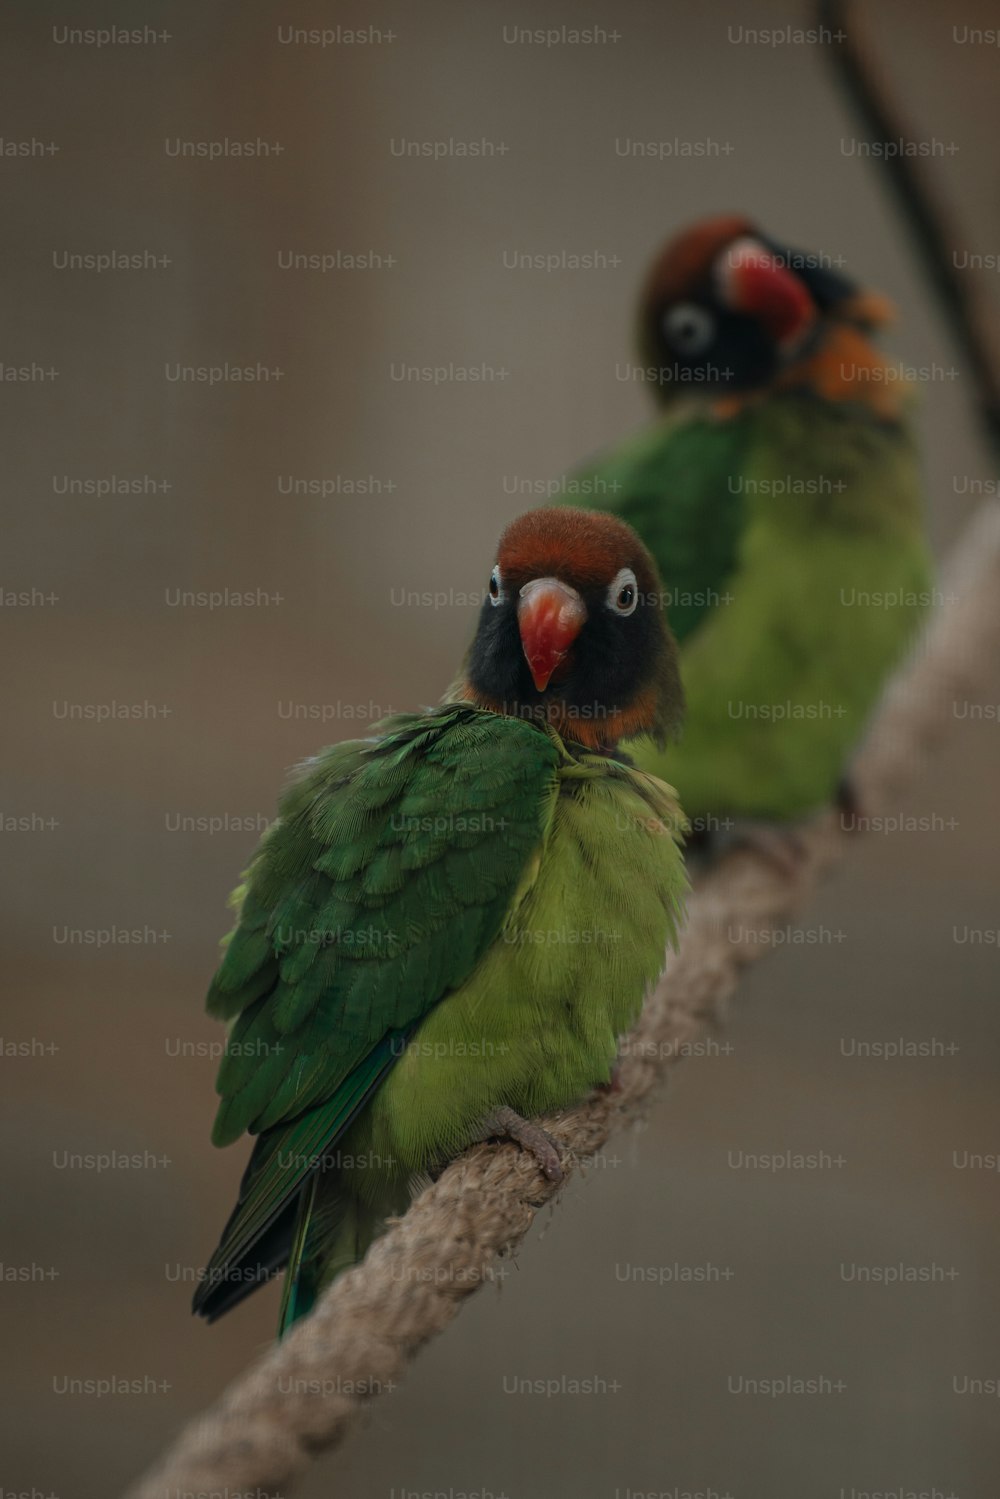 밧줄에 앉아 있는 두 마리의 녹색과 빨간색 새